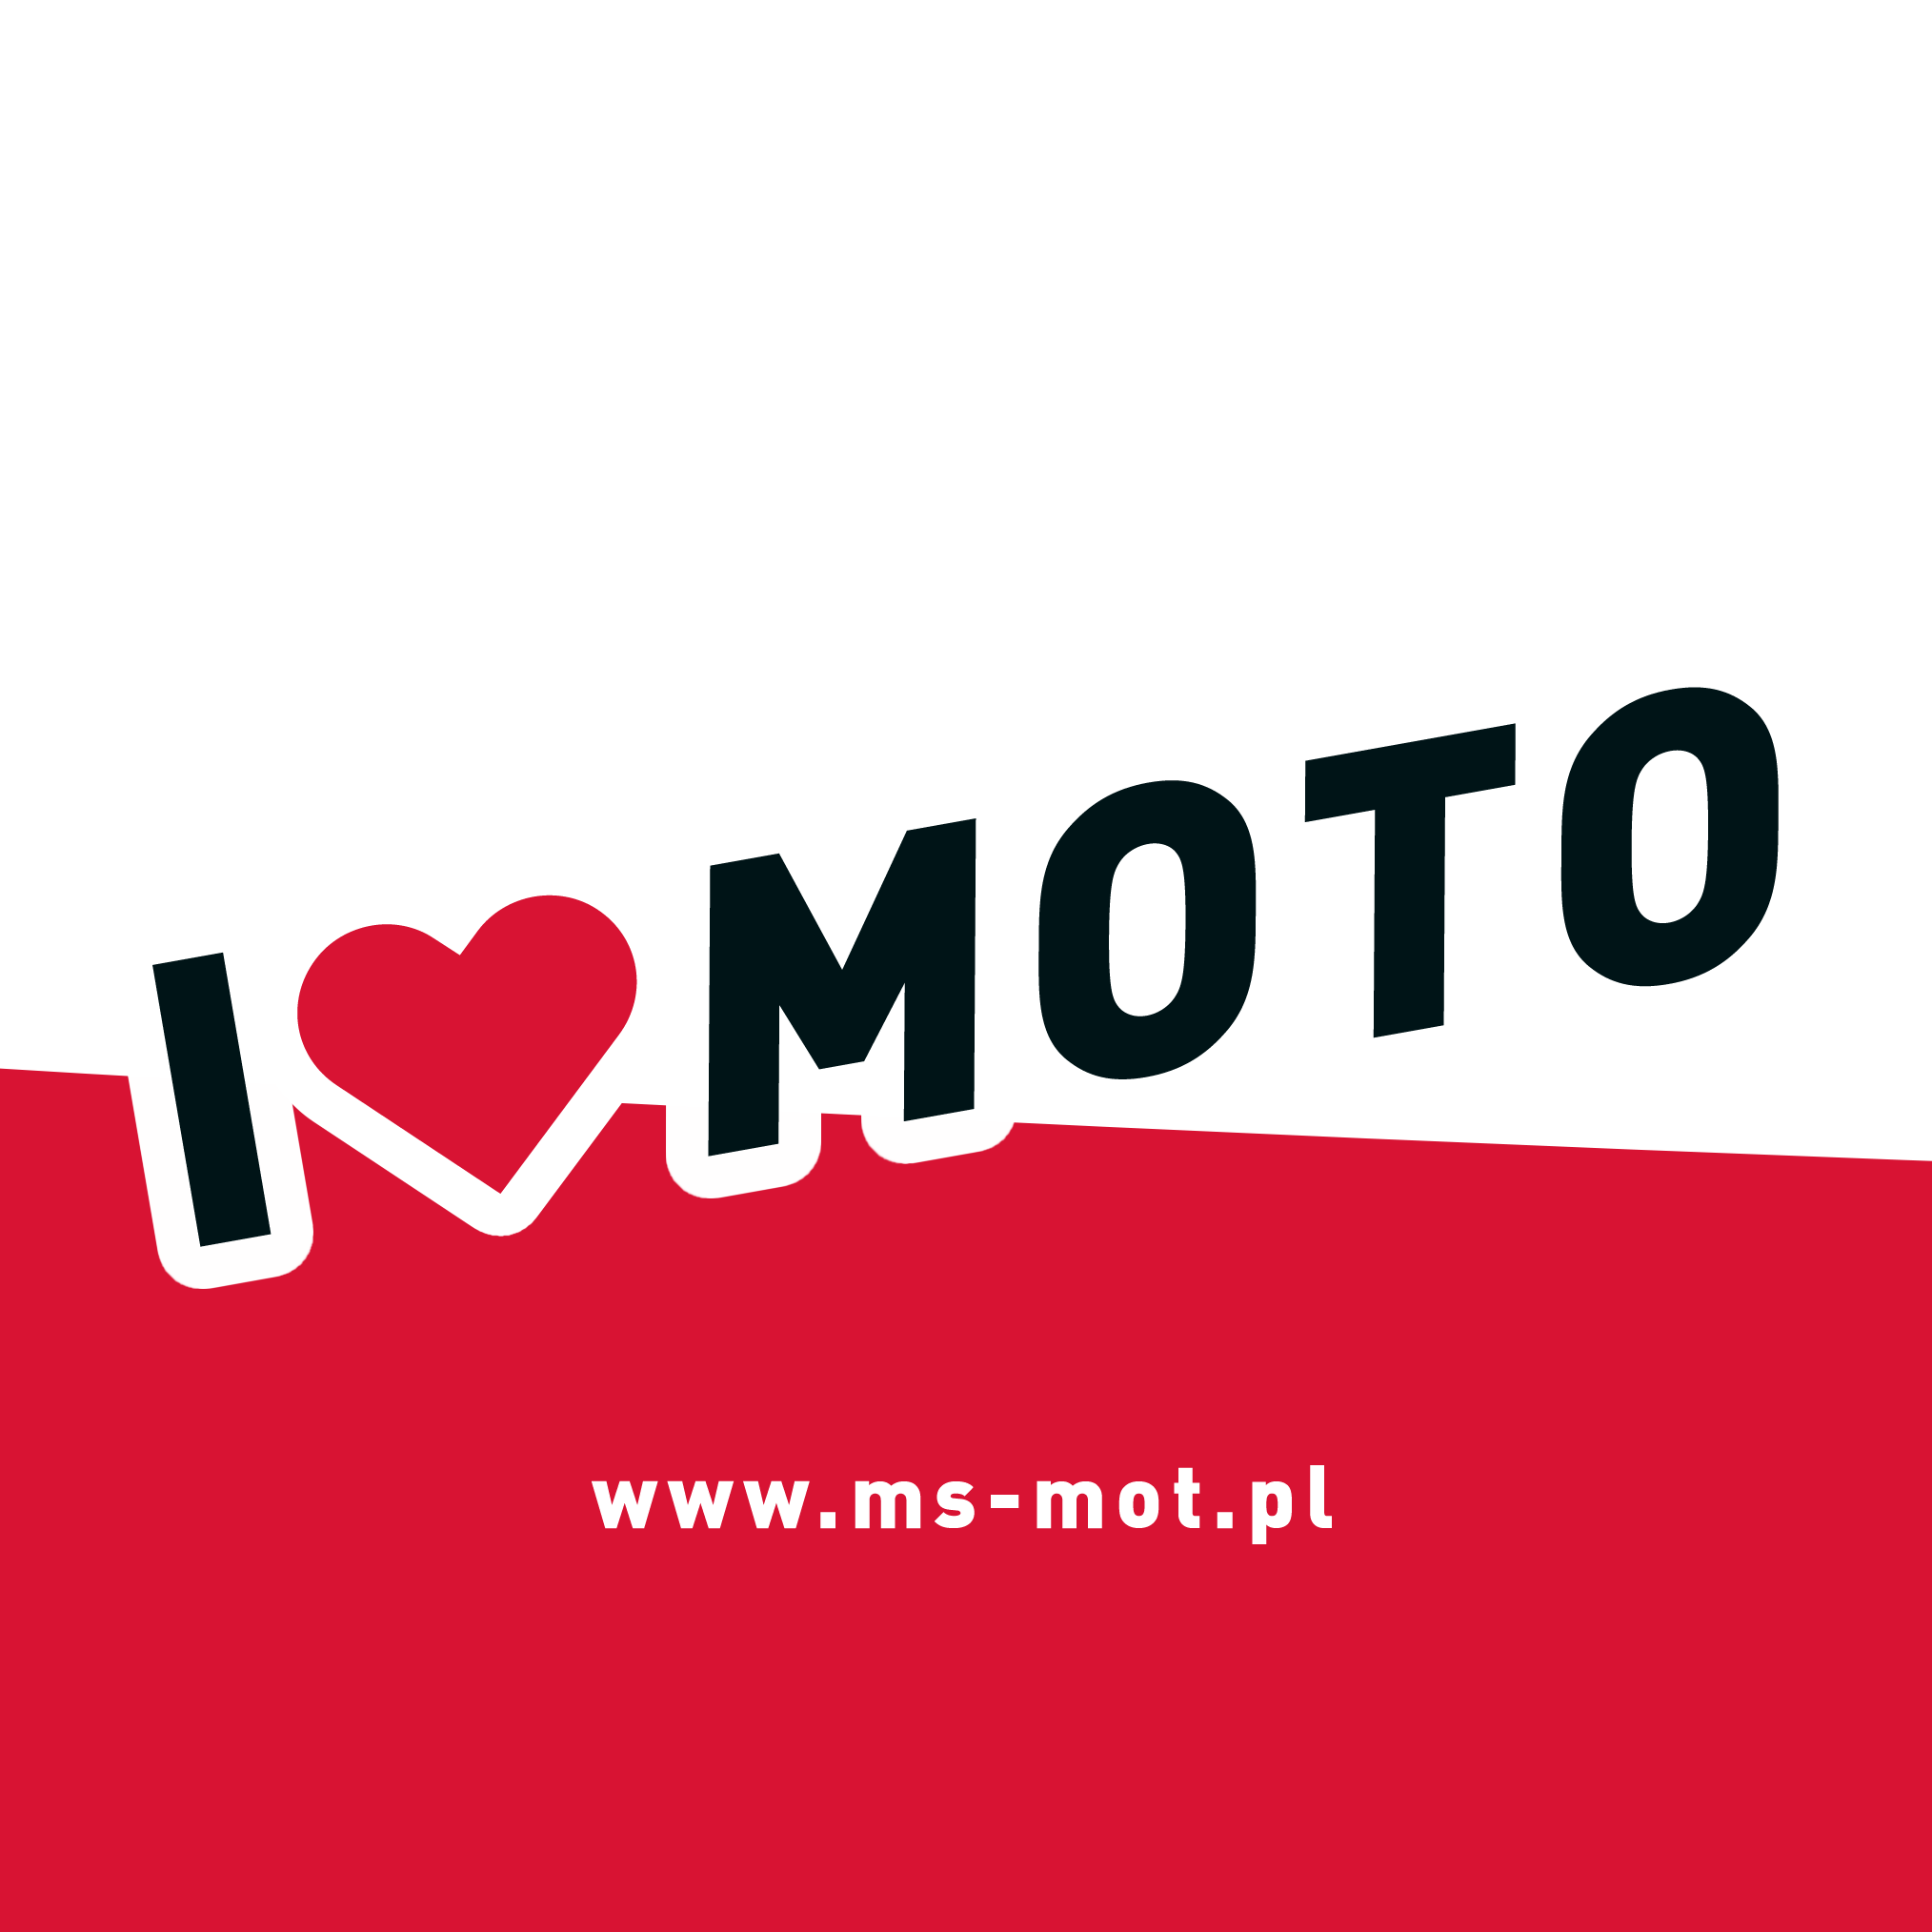 I love MOTO